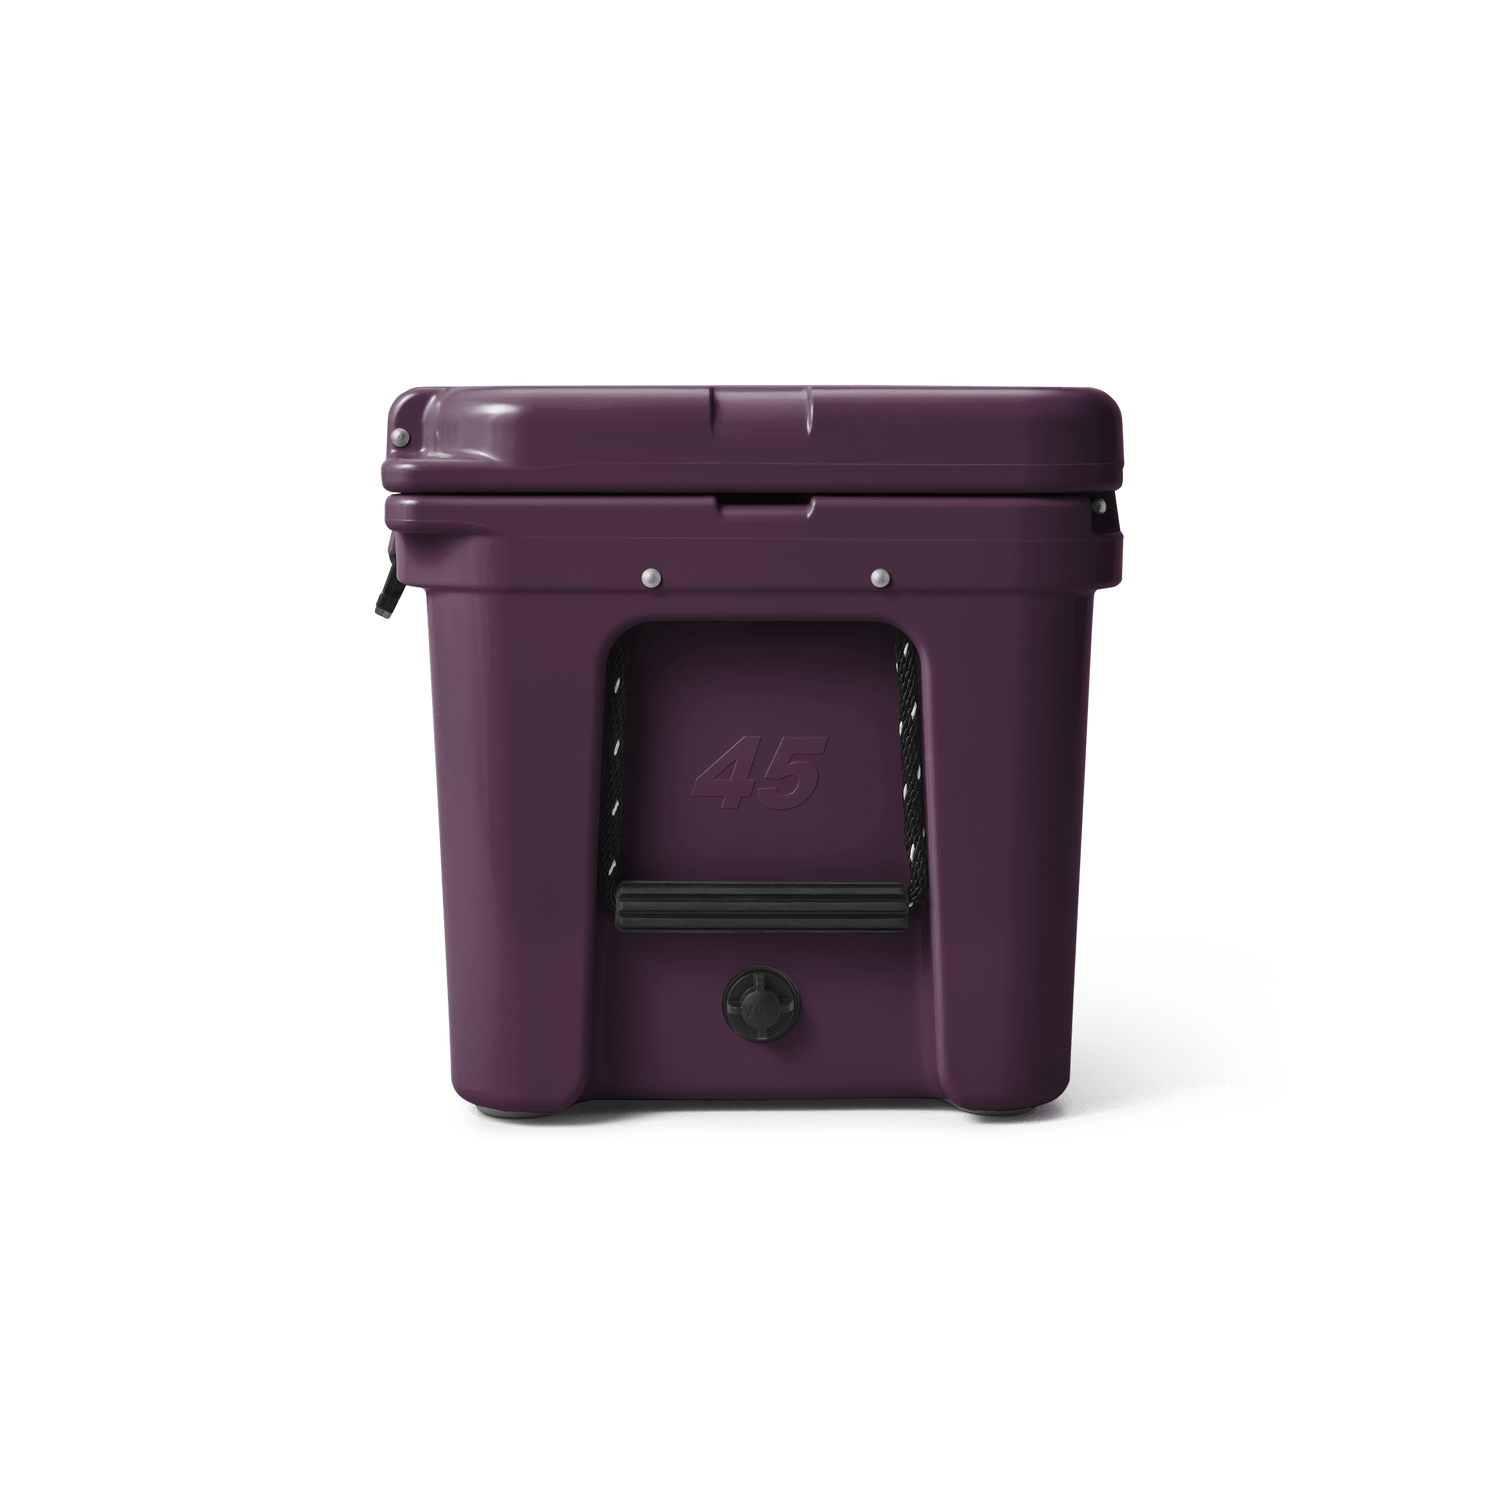 YETI Tundra® 45 Kühlbox Nordic Purple